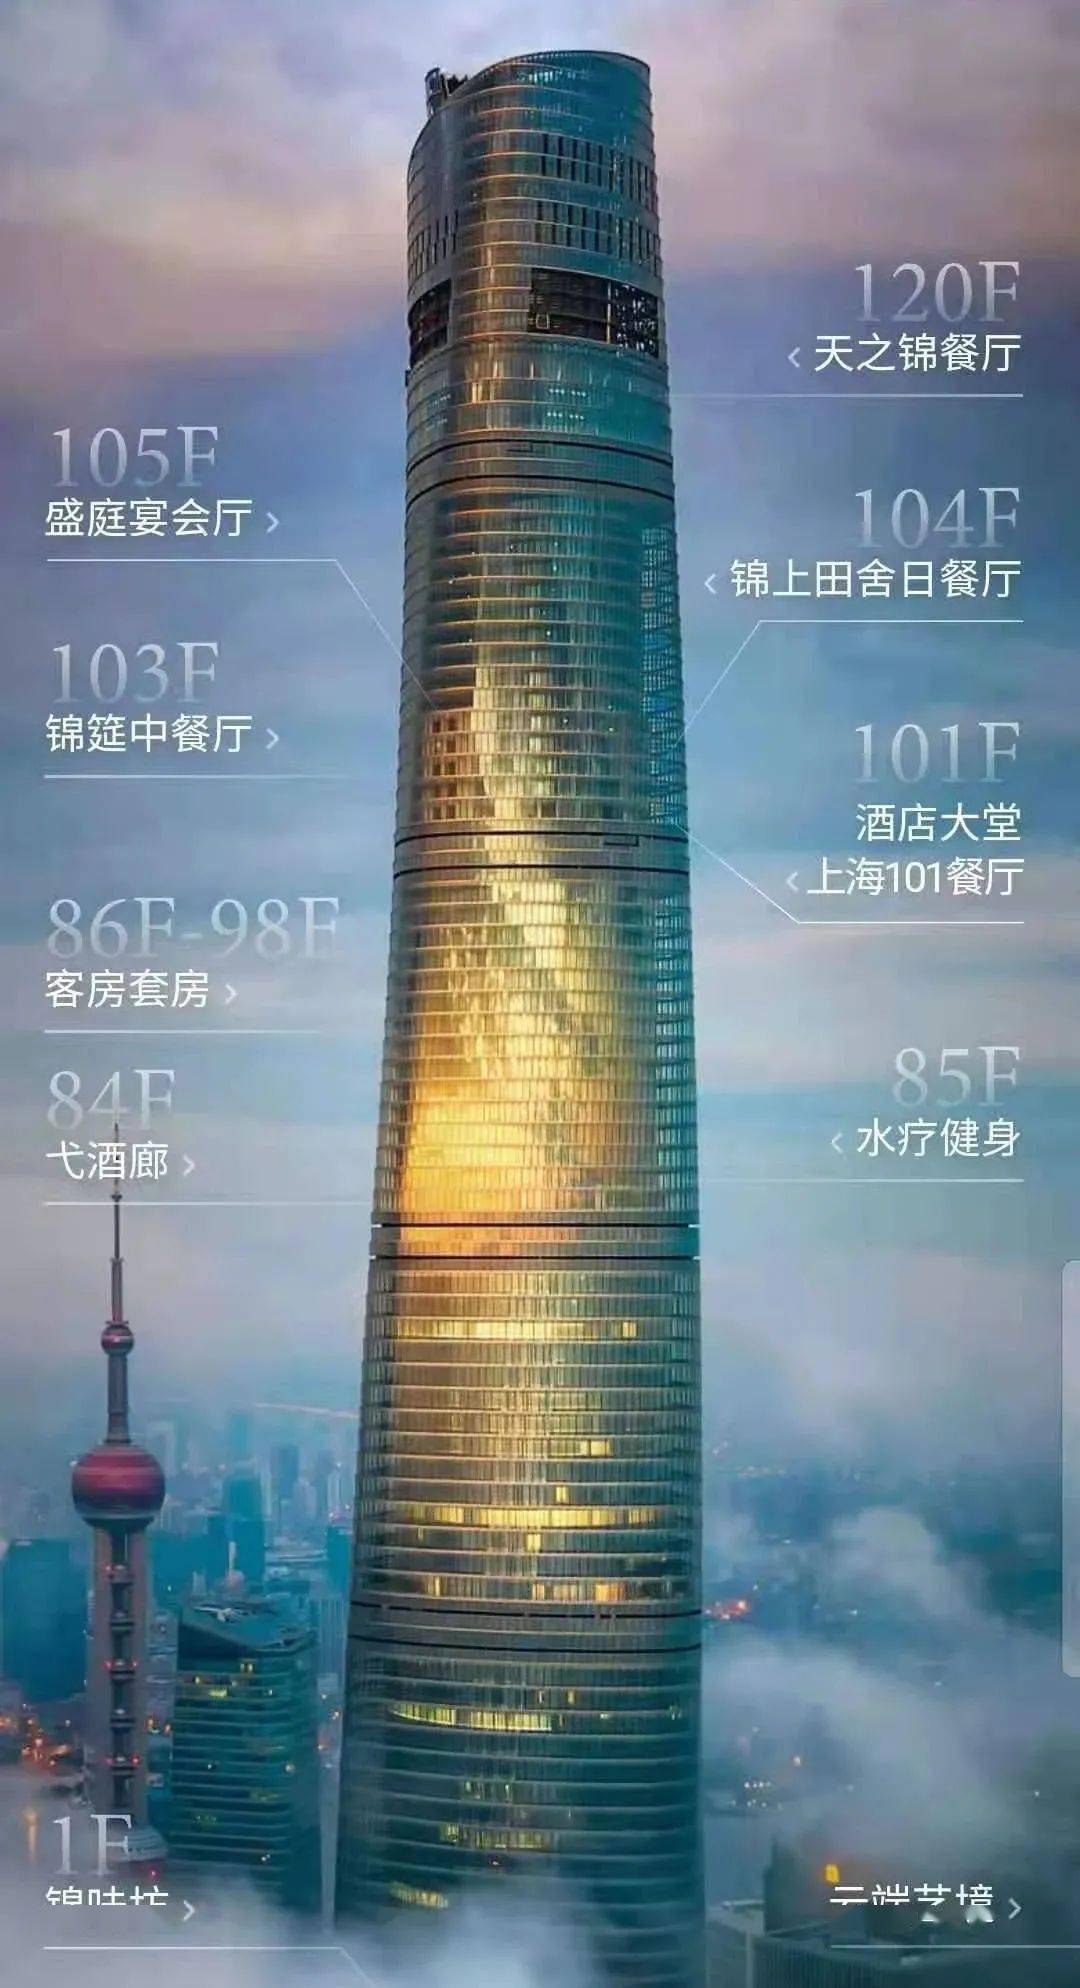 上海中心 j hotel正式营业!